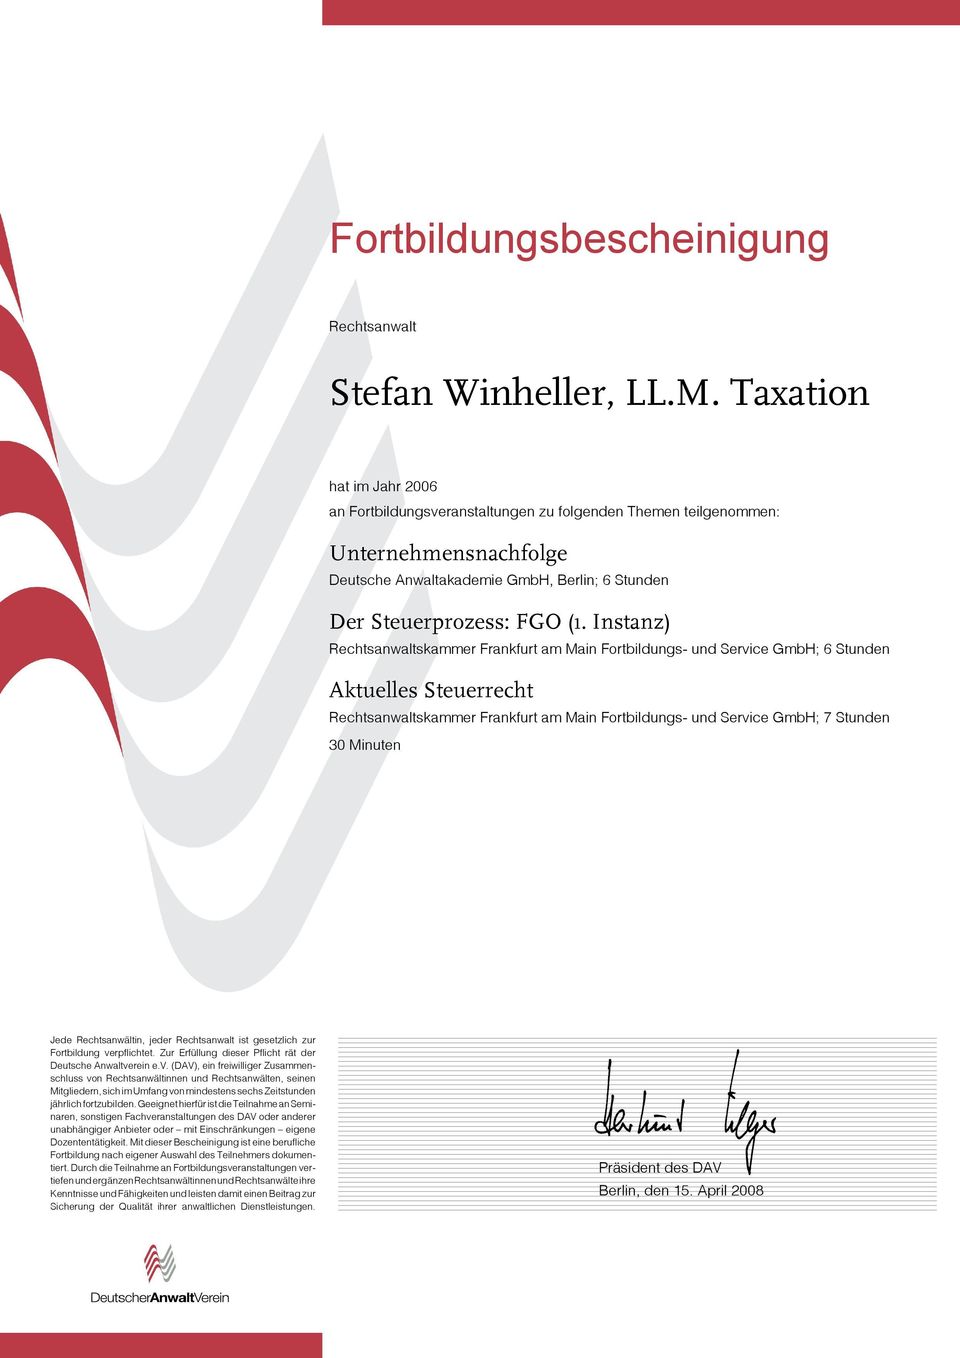 Instanz) skammer Frankfurt am Main Fortbildungs- und Service GmbH; 6 Stunden Aktuelles Steuerrecht skammer